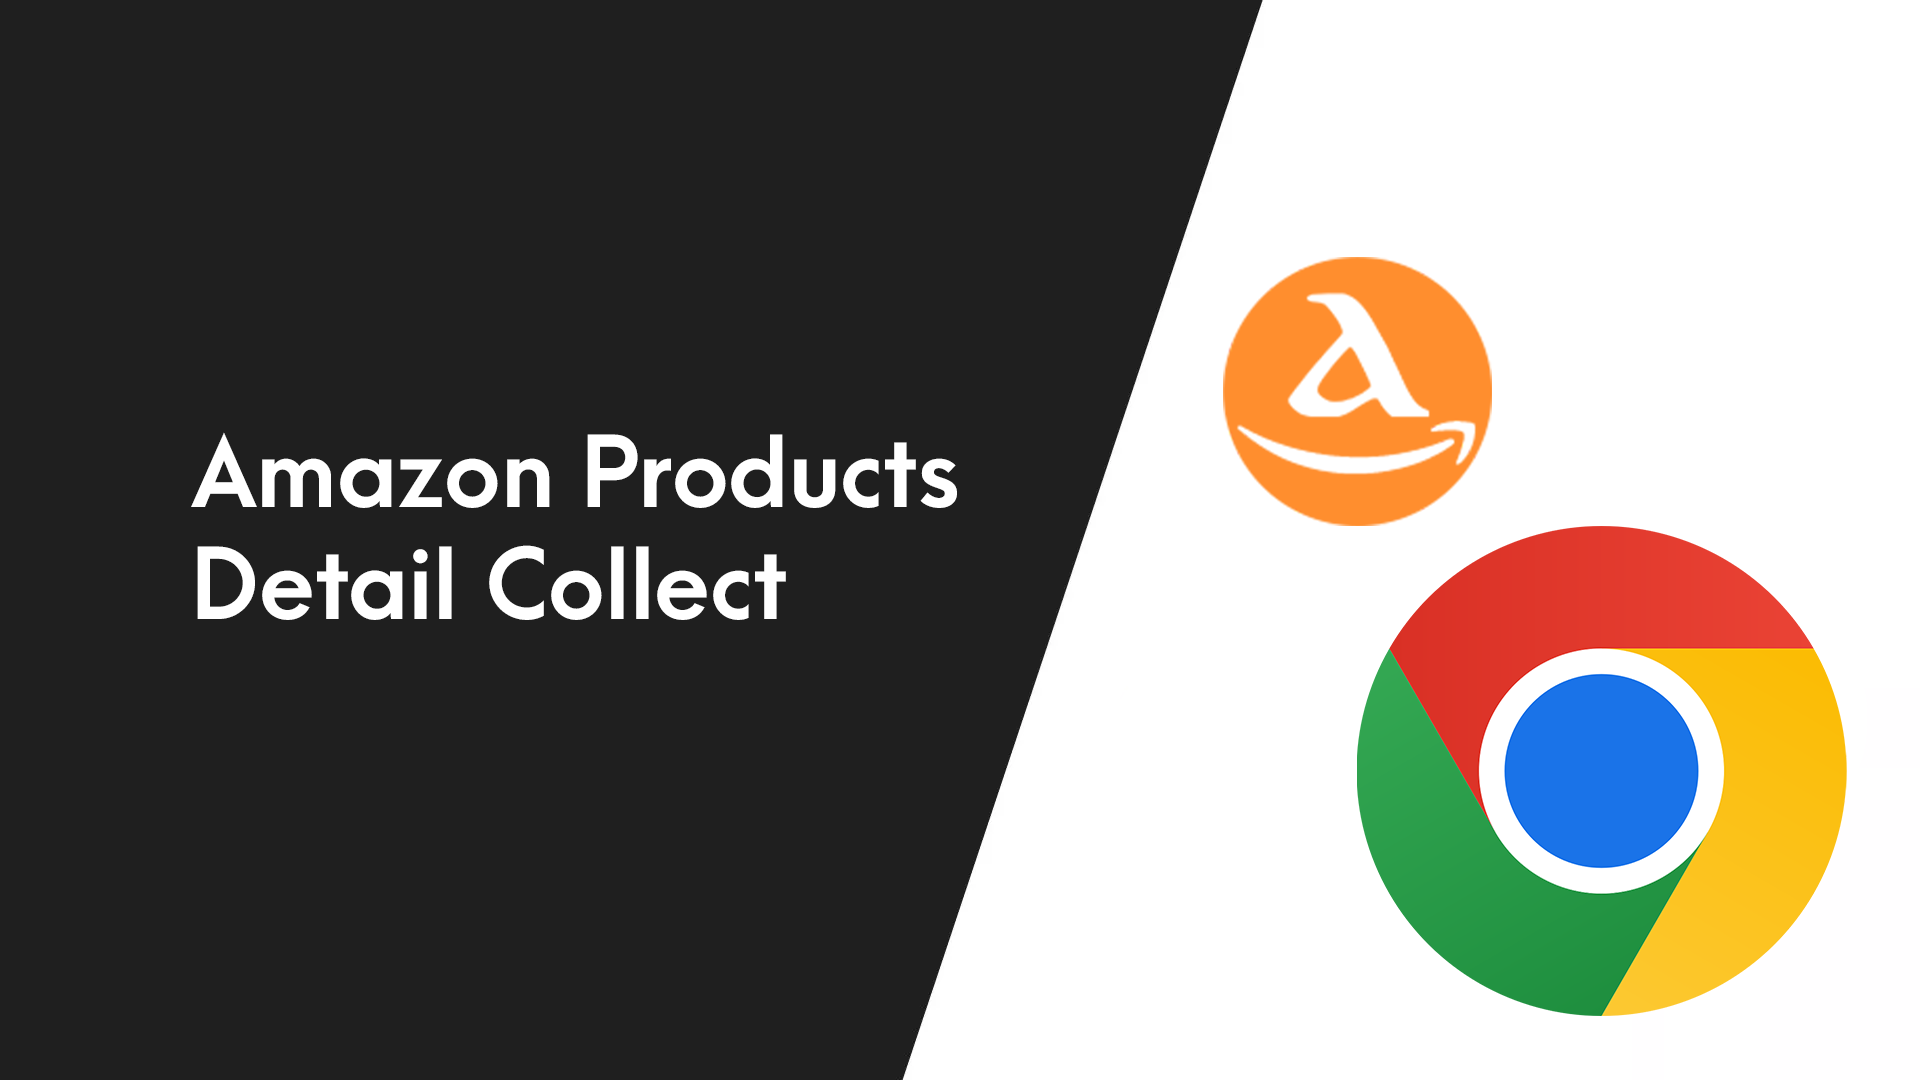 Amazon Product Details Chrome Extension